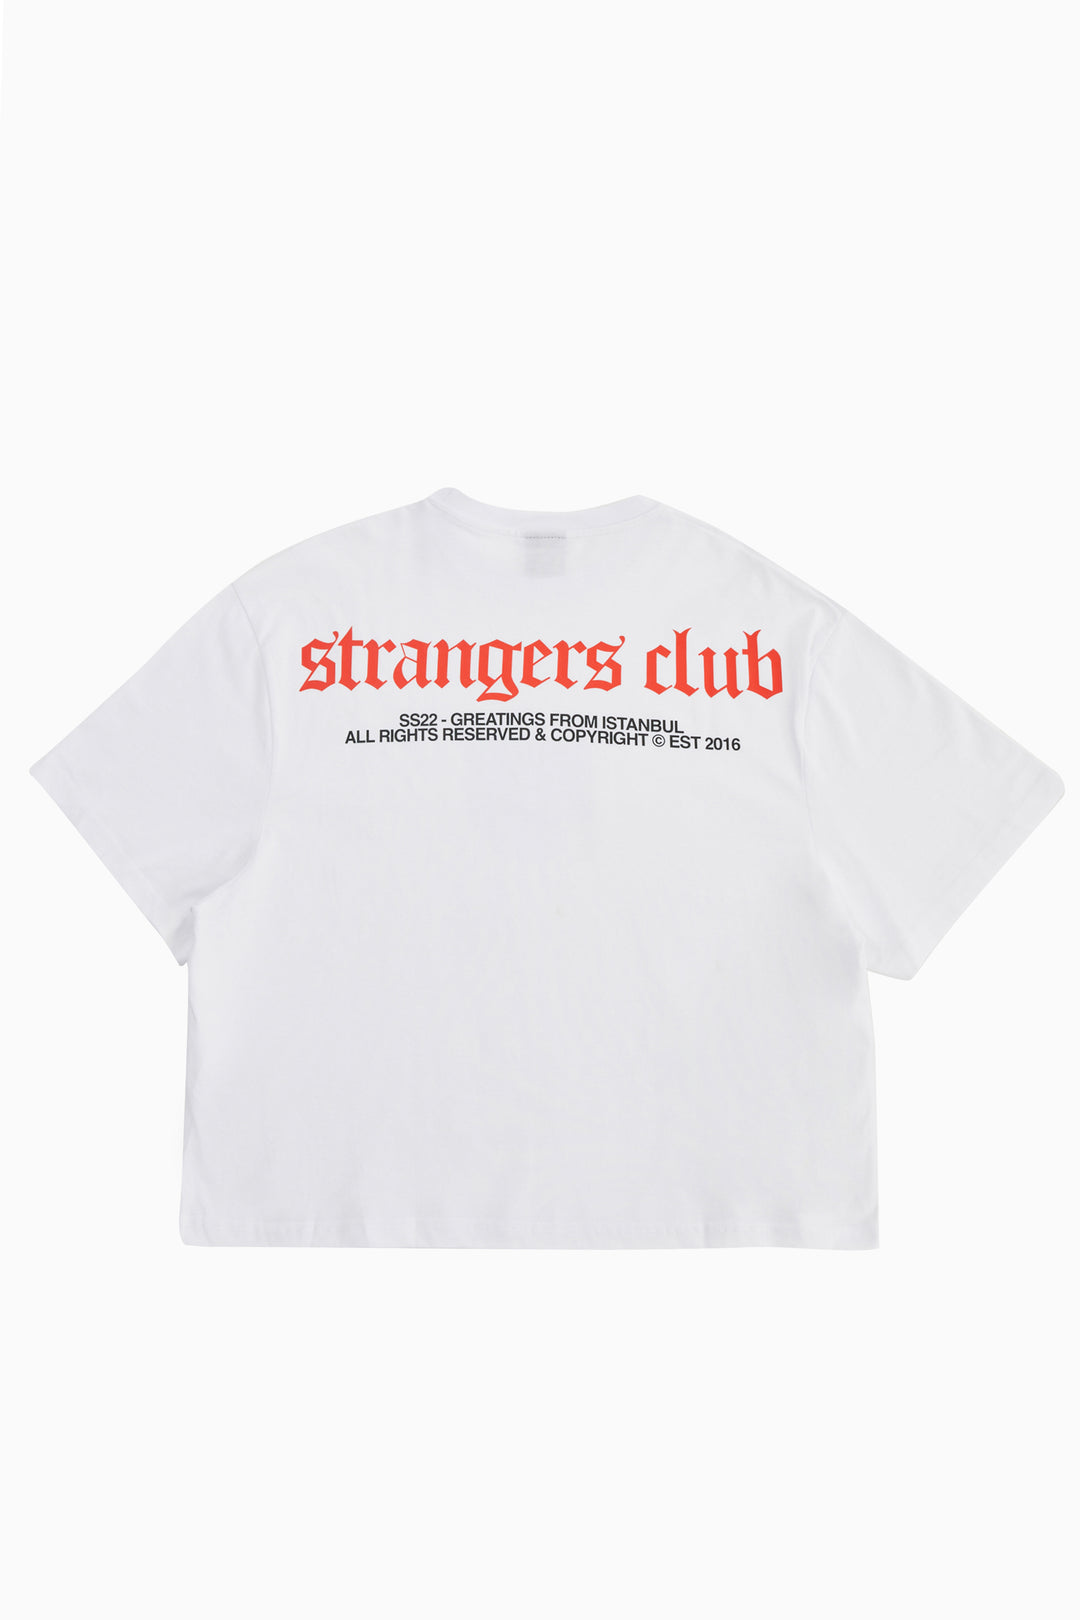 Strangers Club v2.003 / Women Oversize T-shirt